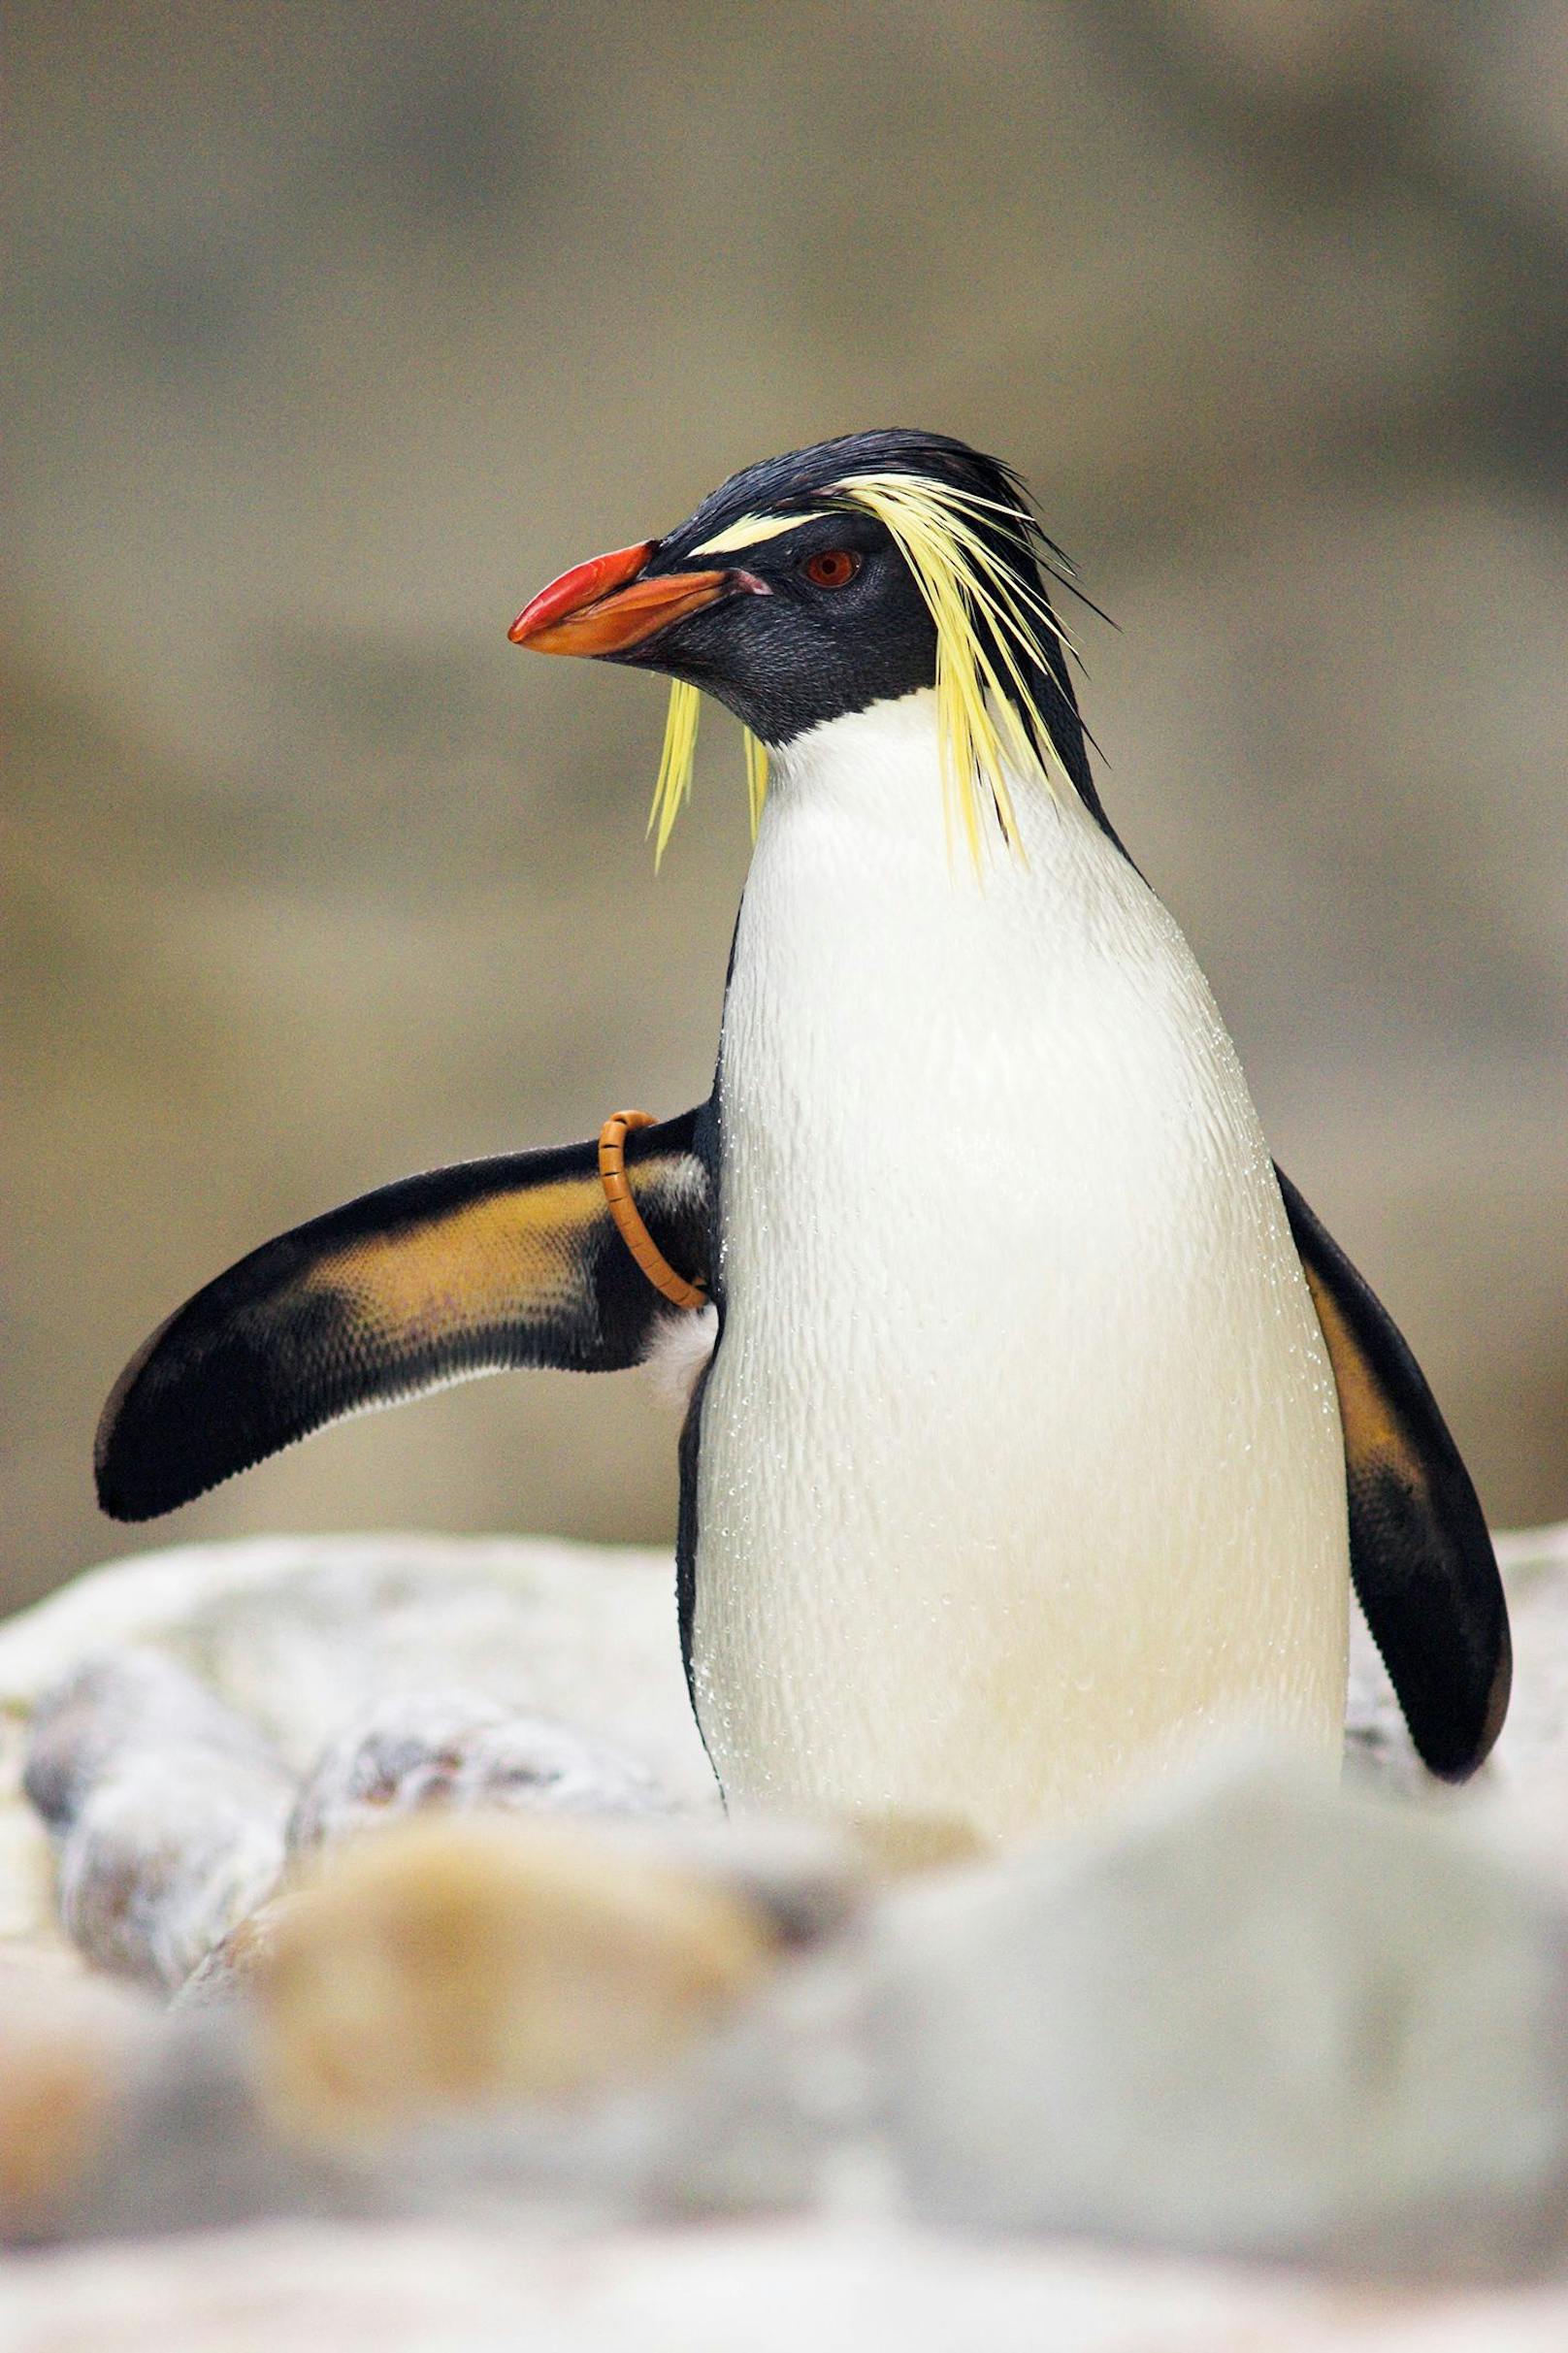 Um auf die Bedrohung der Vogelrasse hinzuweisen, feiern wir weltweit den "Penguin Awareness Day". <br>